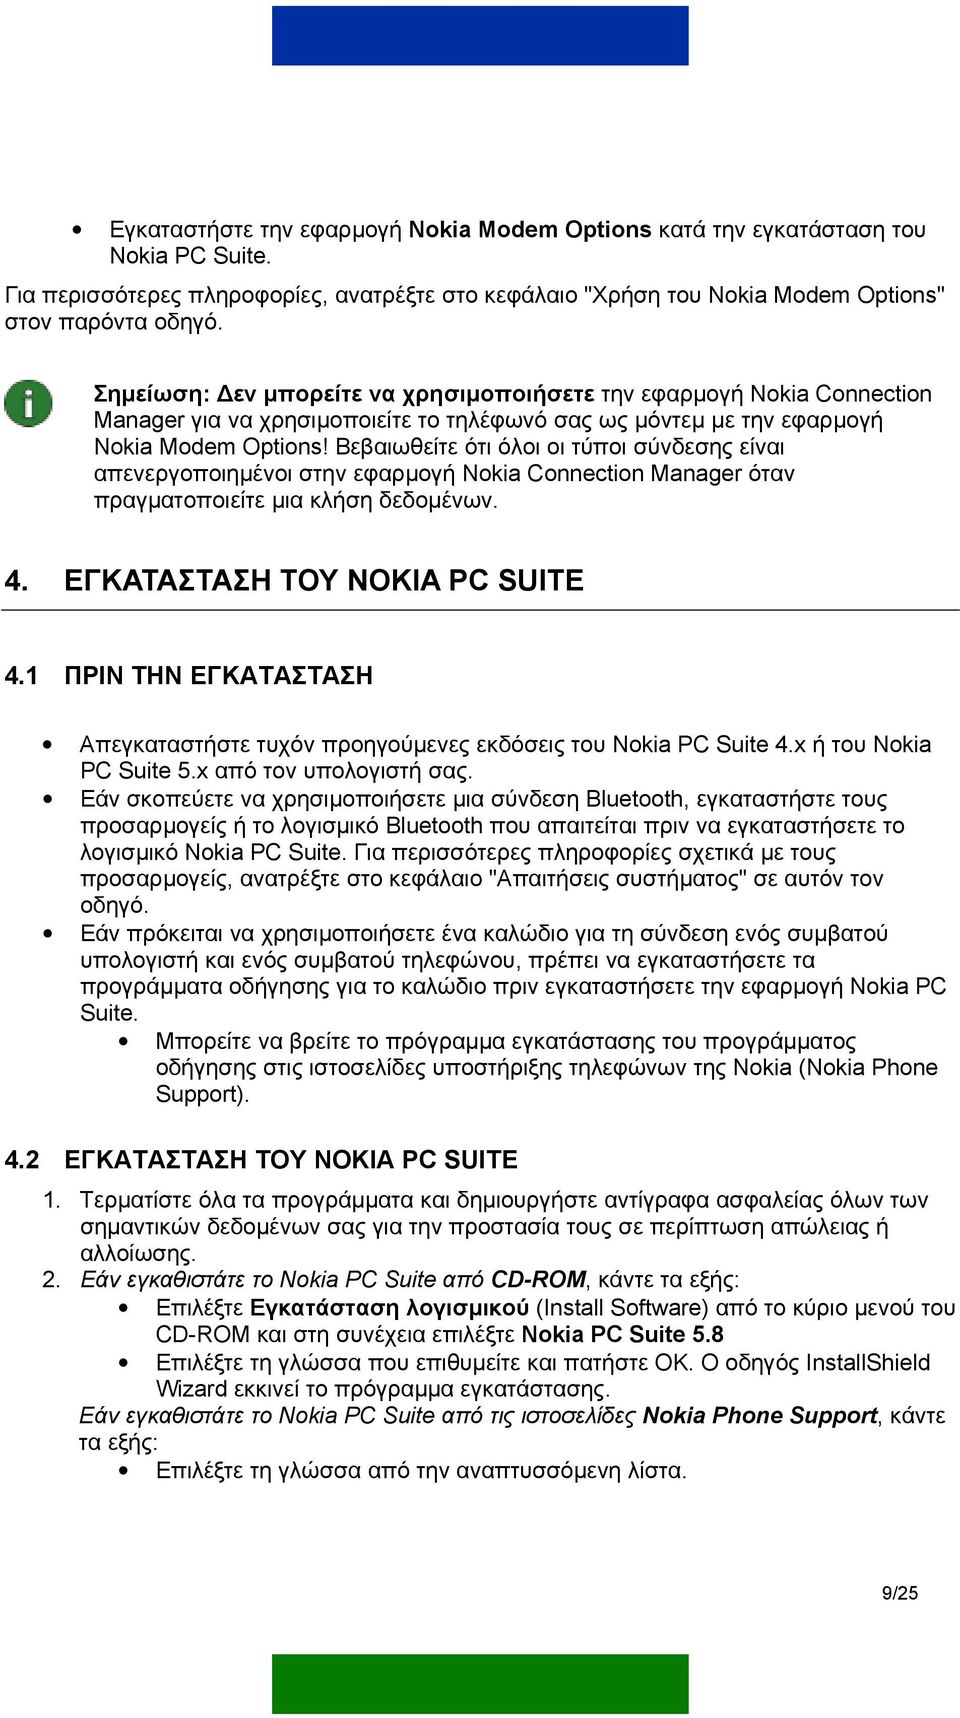 Βεβαιωθείτε ότι όλοι οι τύποι σύνδεσης είναι απενεργοποιηµένοι στην εφαρµογή Nokia Connection Manager όταν πραγµατοποιείτε µια κλήση δεδοµένων. 4. ΕΓΚΑΤΑΣΤΑΣΗ ΤΟΥ NOKIA PC SUITE 4.